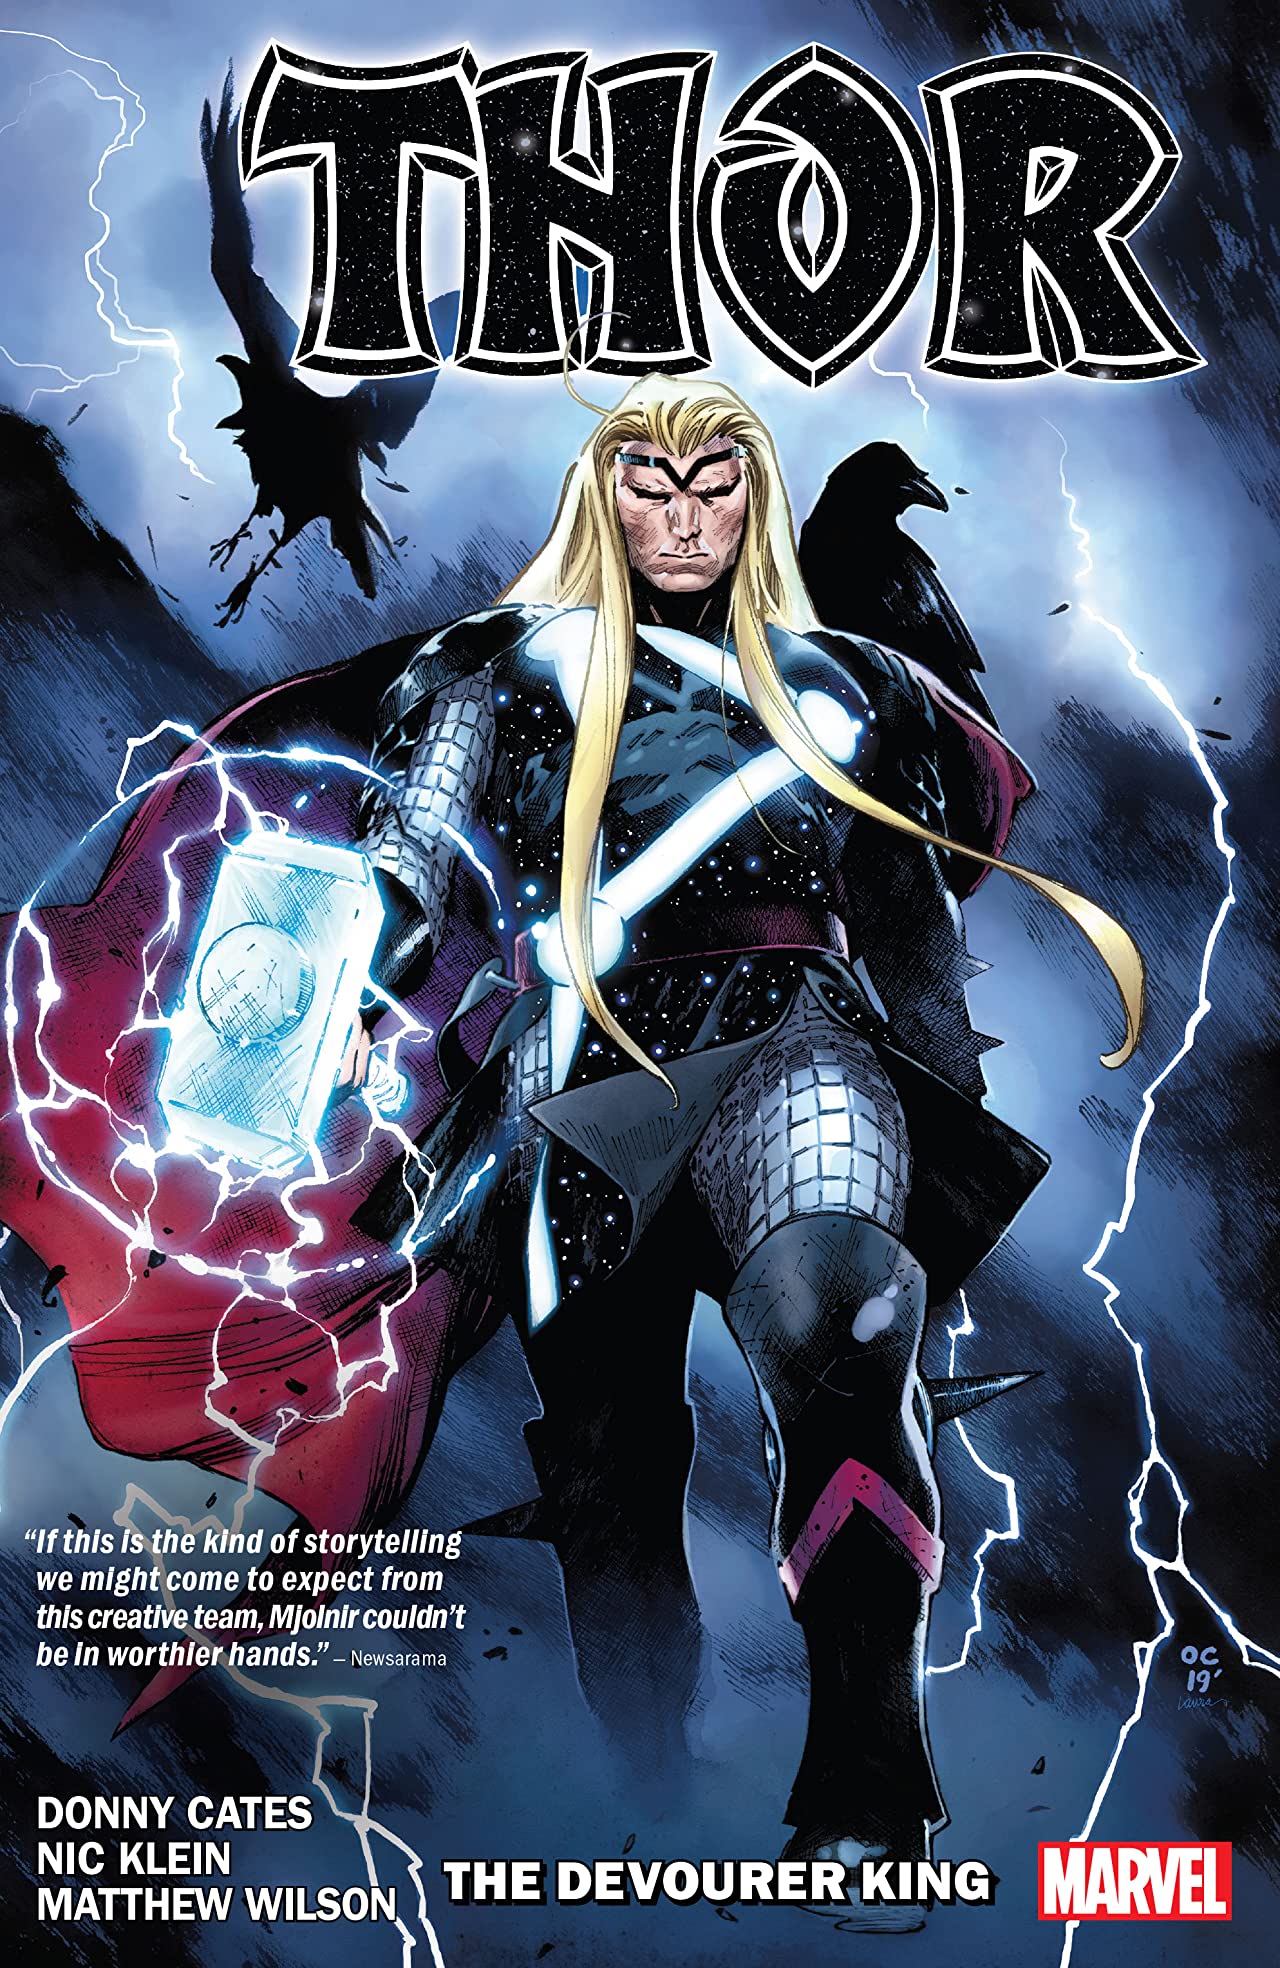 Thor by Donny Cates Graphic Novel Volume 1 Devourer King